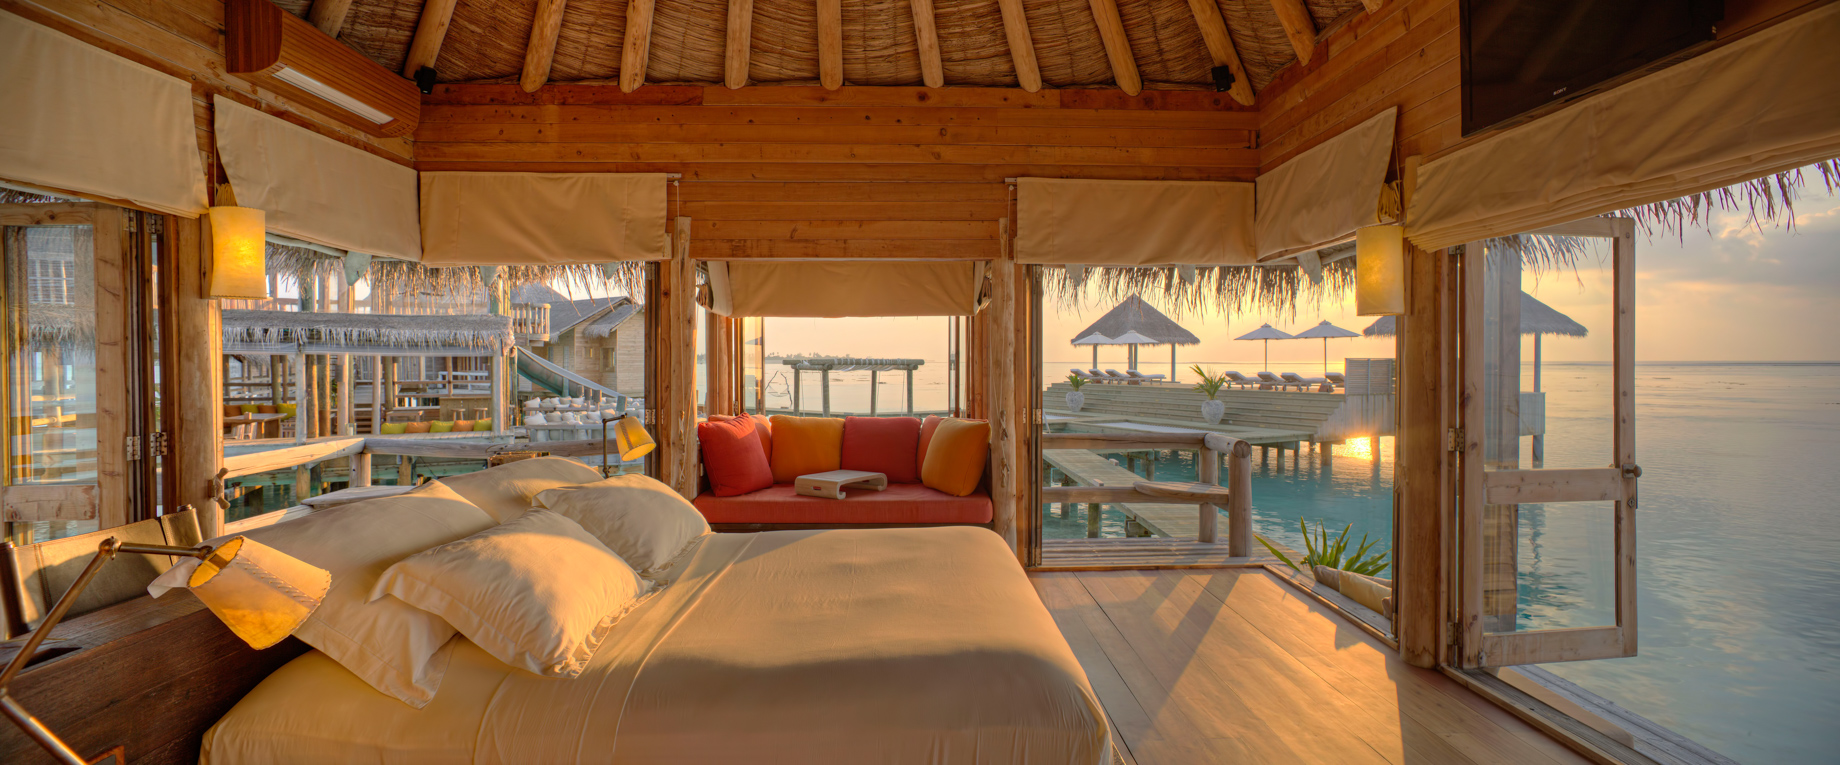 Gili Lankanfushi Resort – North Male Atoll, Maldives – The Private Reserve Master Suite Bedroom Sunrise